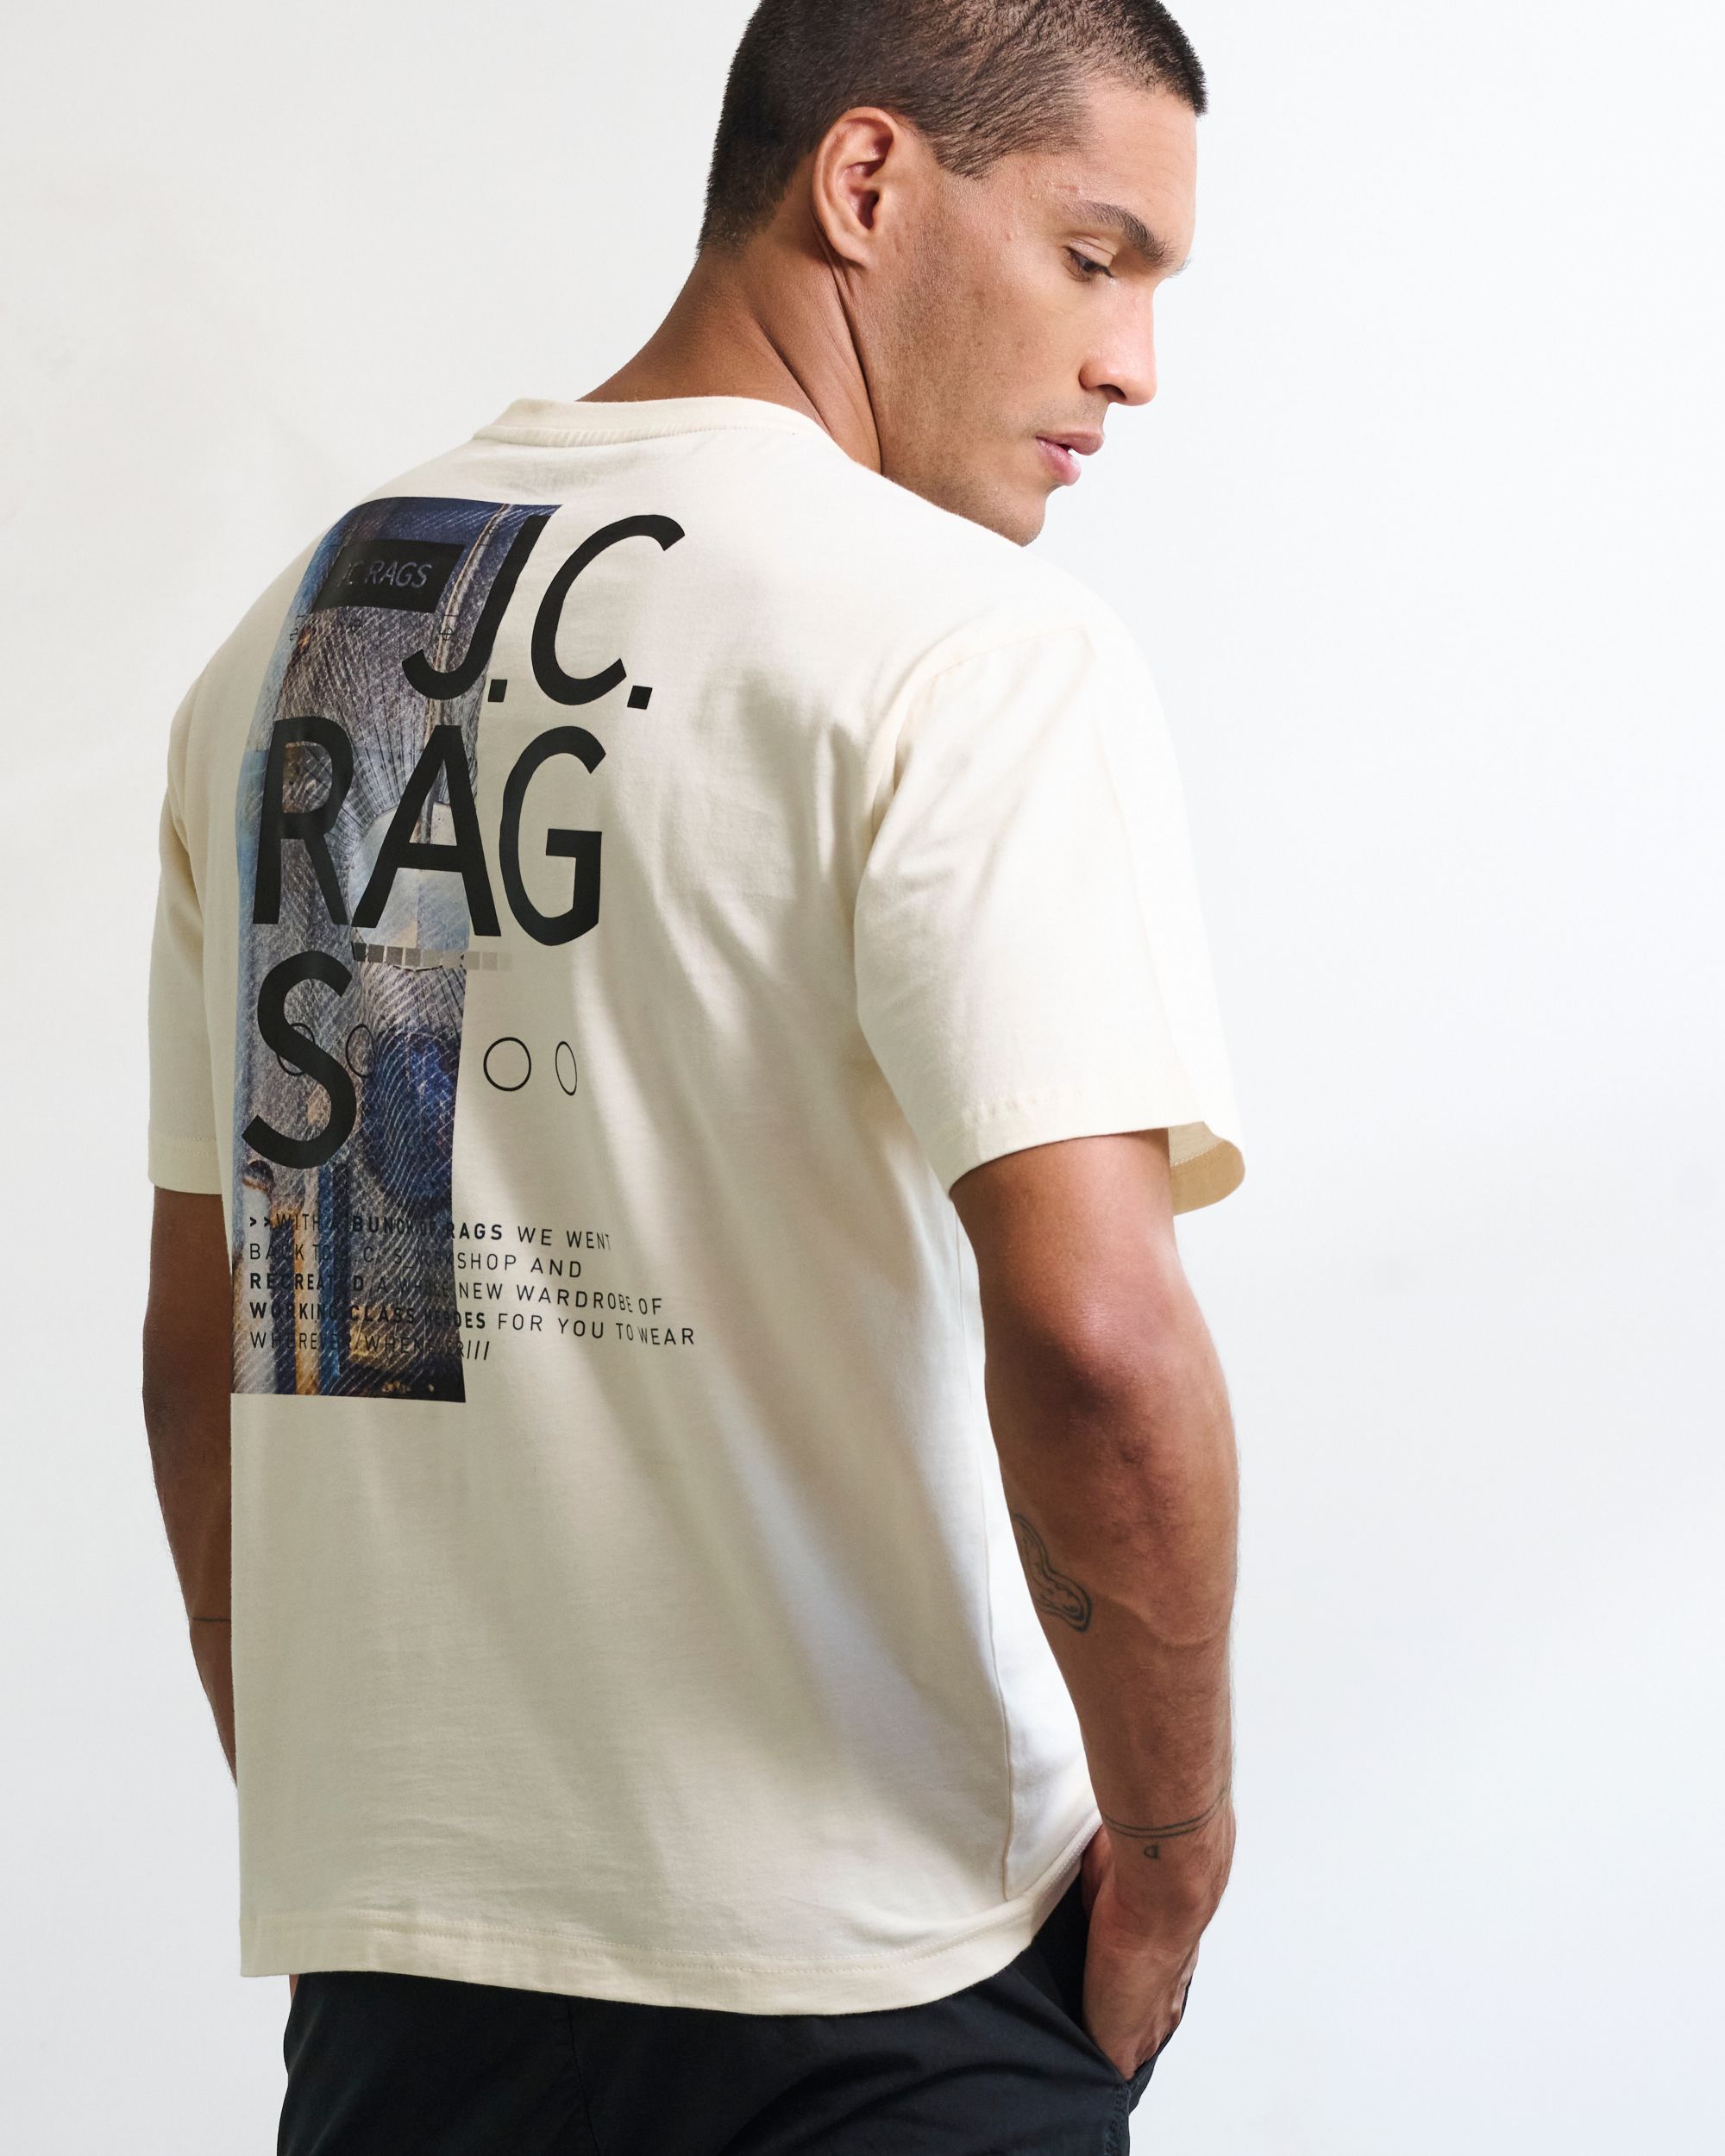 J.C Rags T shirt KM Coconut milk 084874-001-L